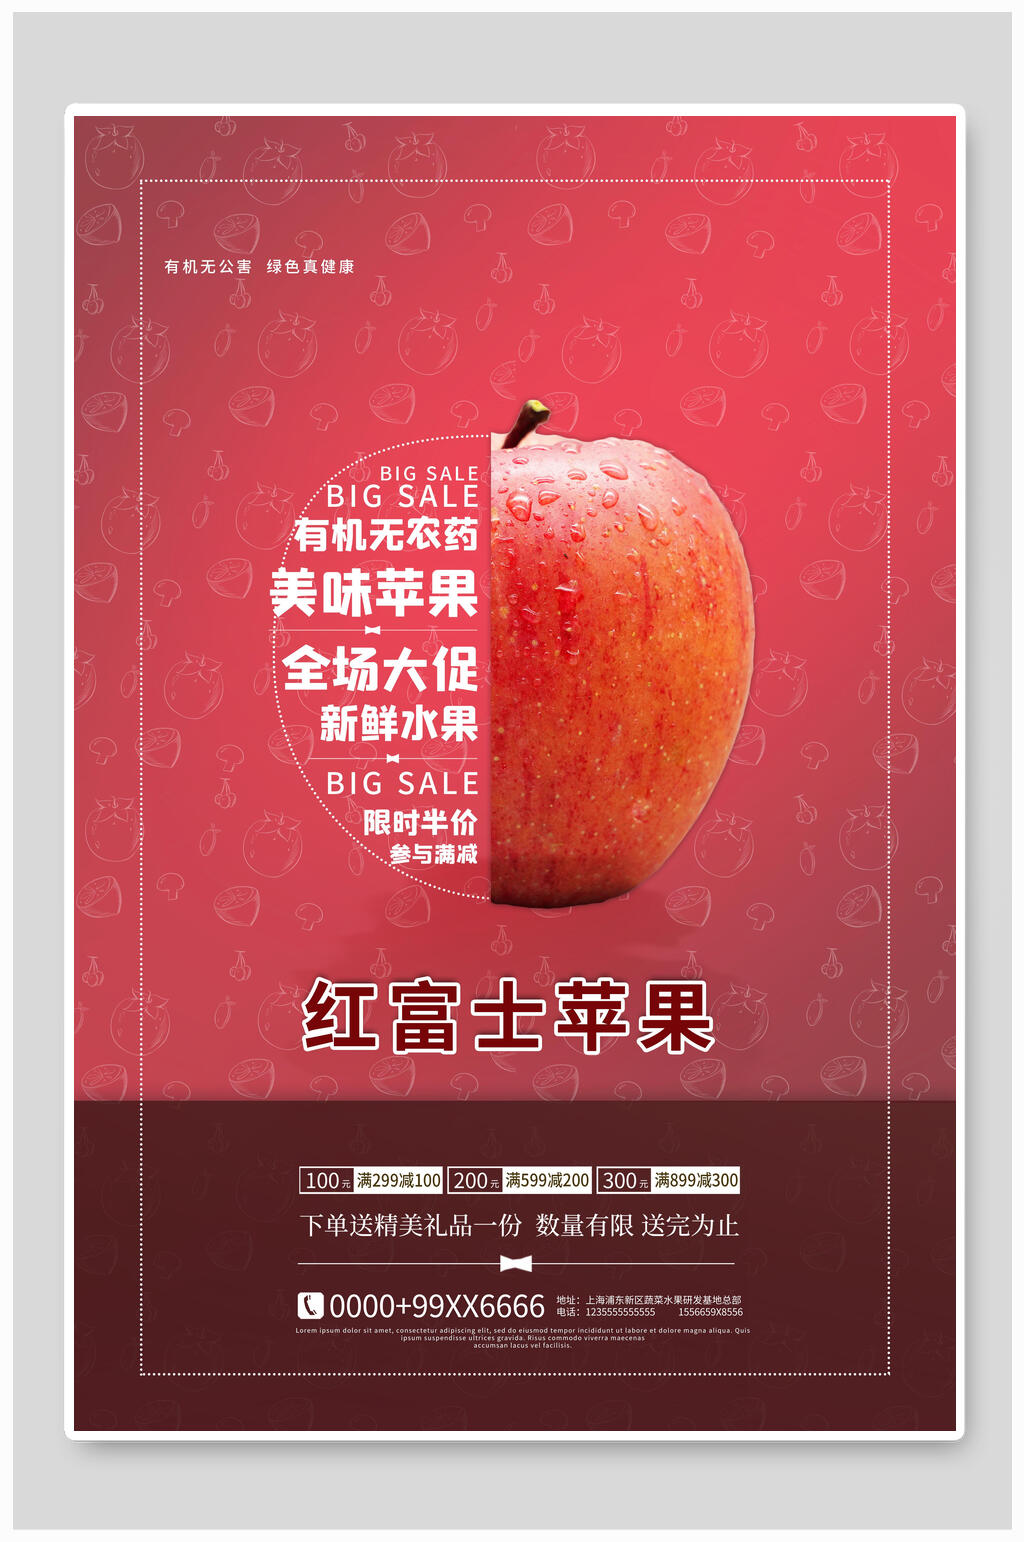 红富士苹果文案图片